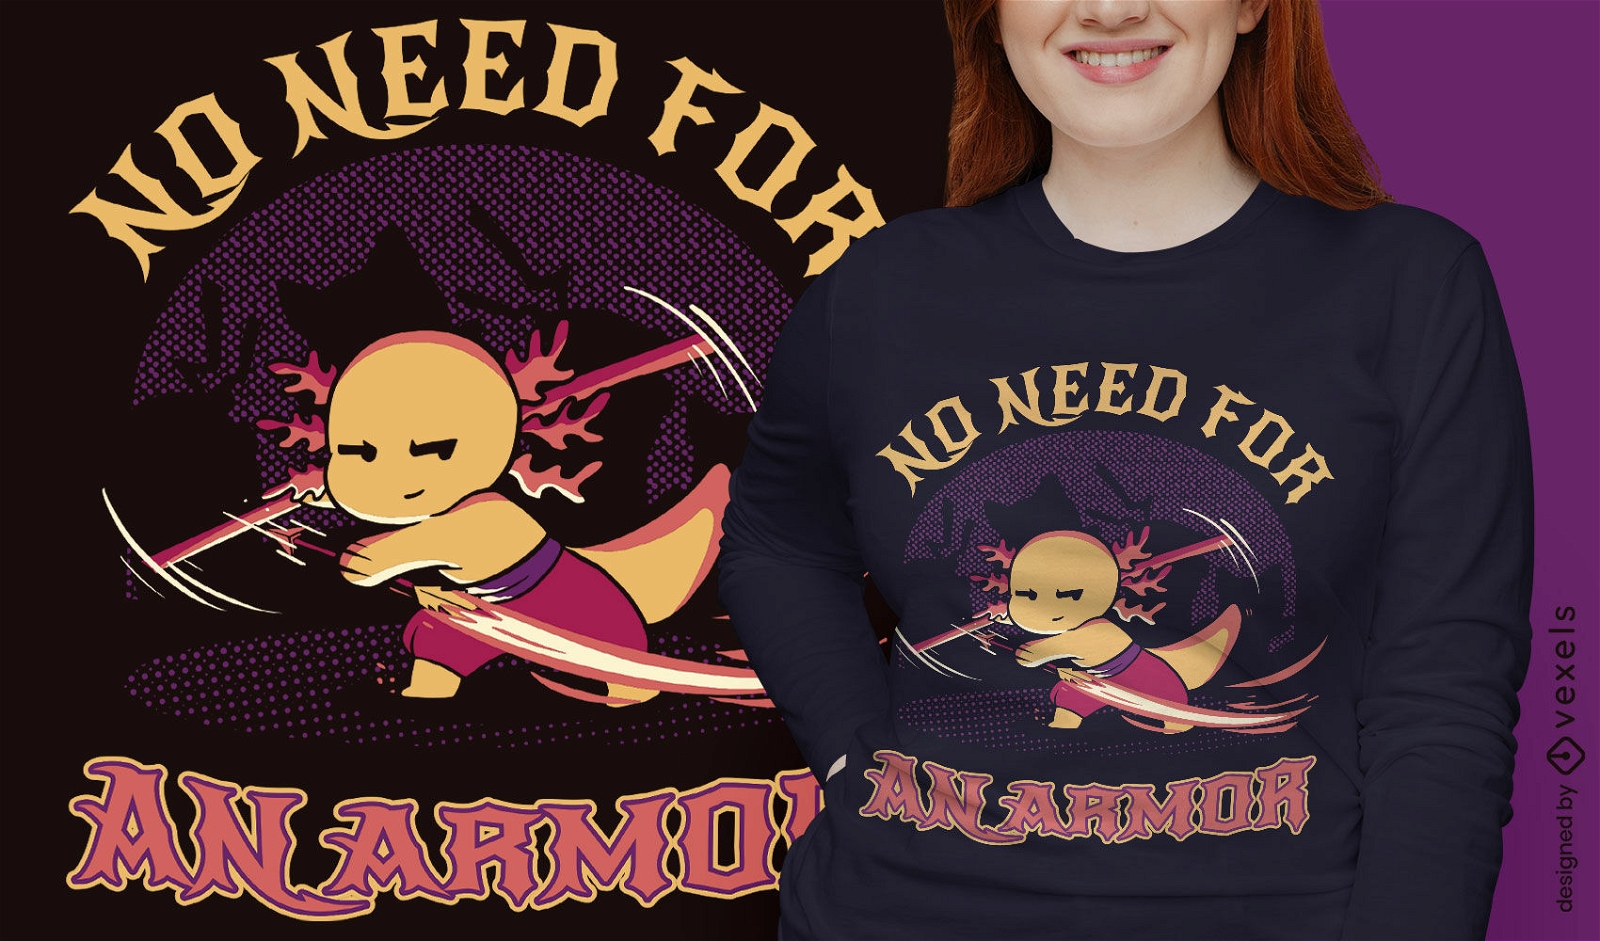 Axolotl warrior fantasy animal t-shirt design